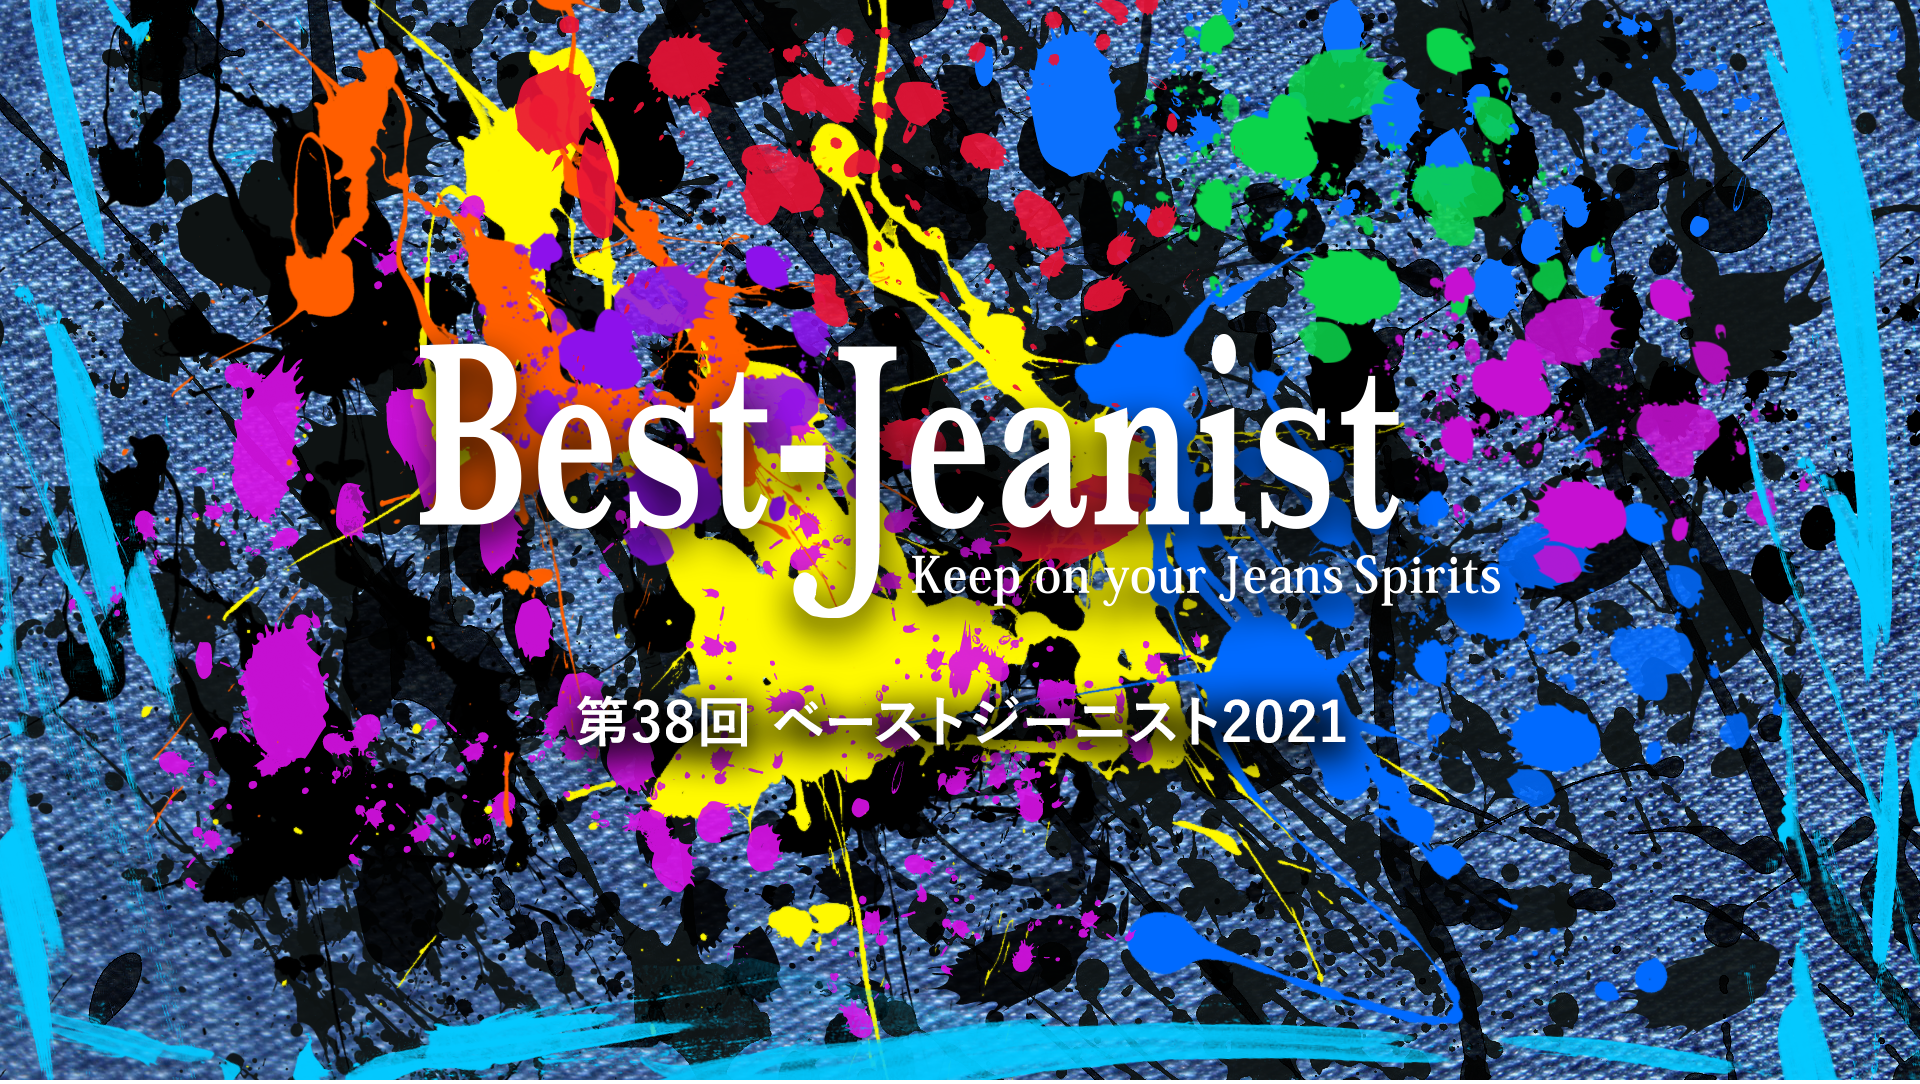 最もジーンズの似合う有名人を表彰する 第38回ベストジーニスト21 11月に開催決定 日本ジーンズ協議会のプレスリリース